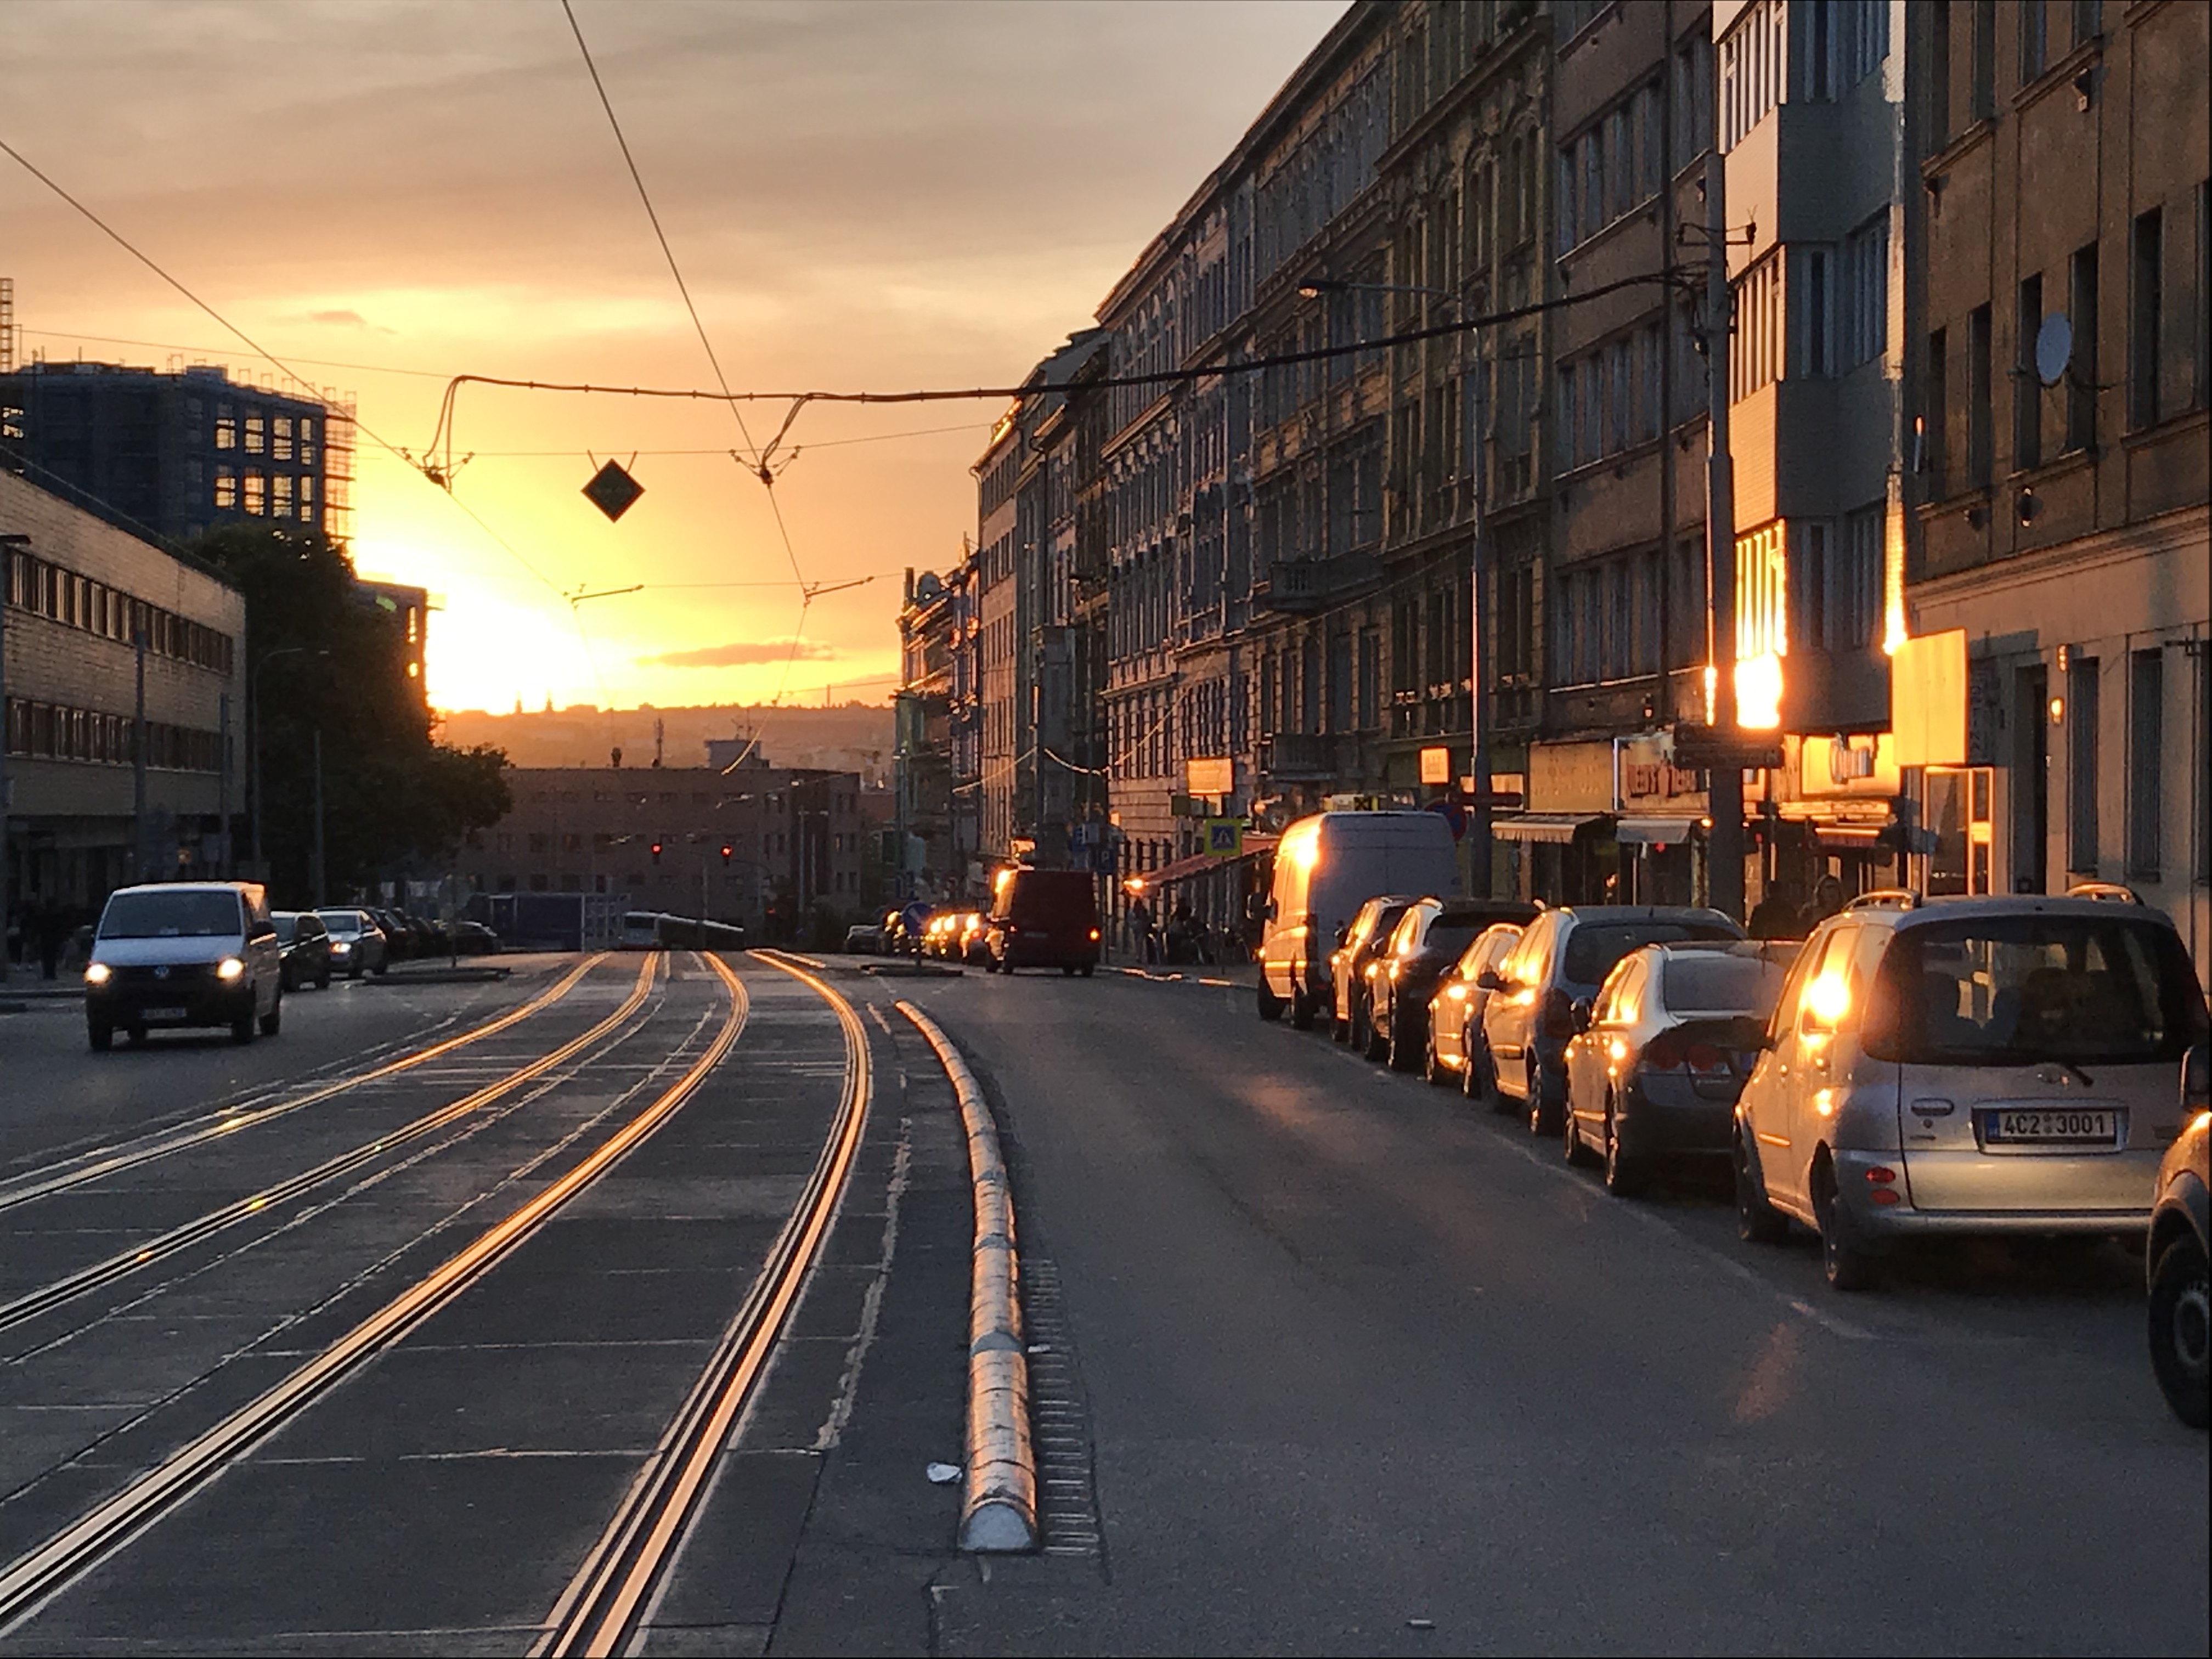 Image 13. Sunset in Prague.